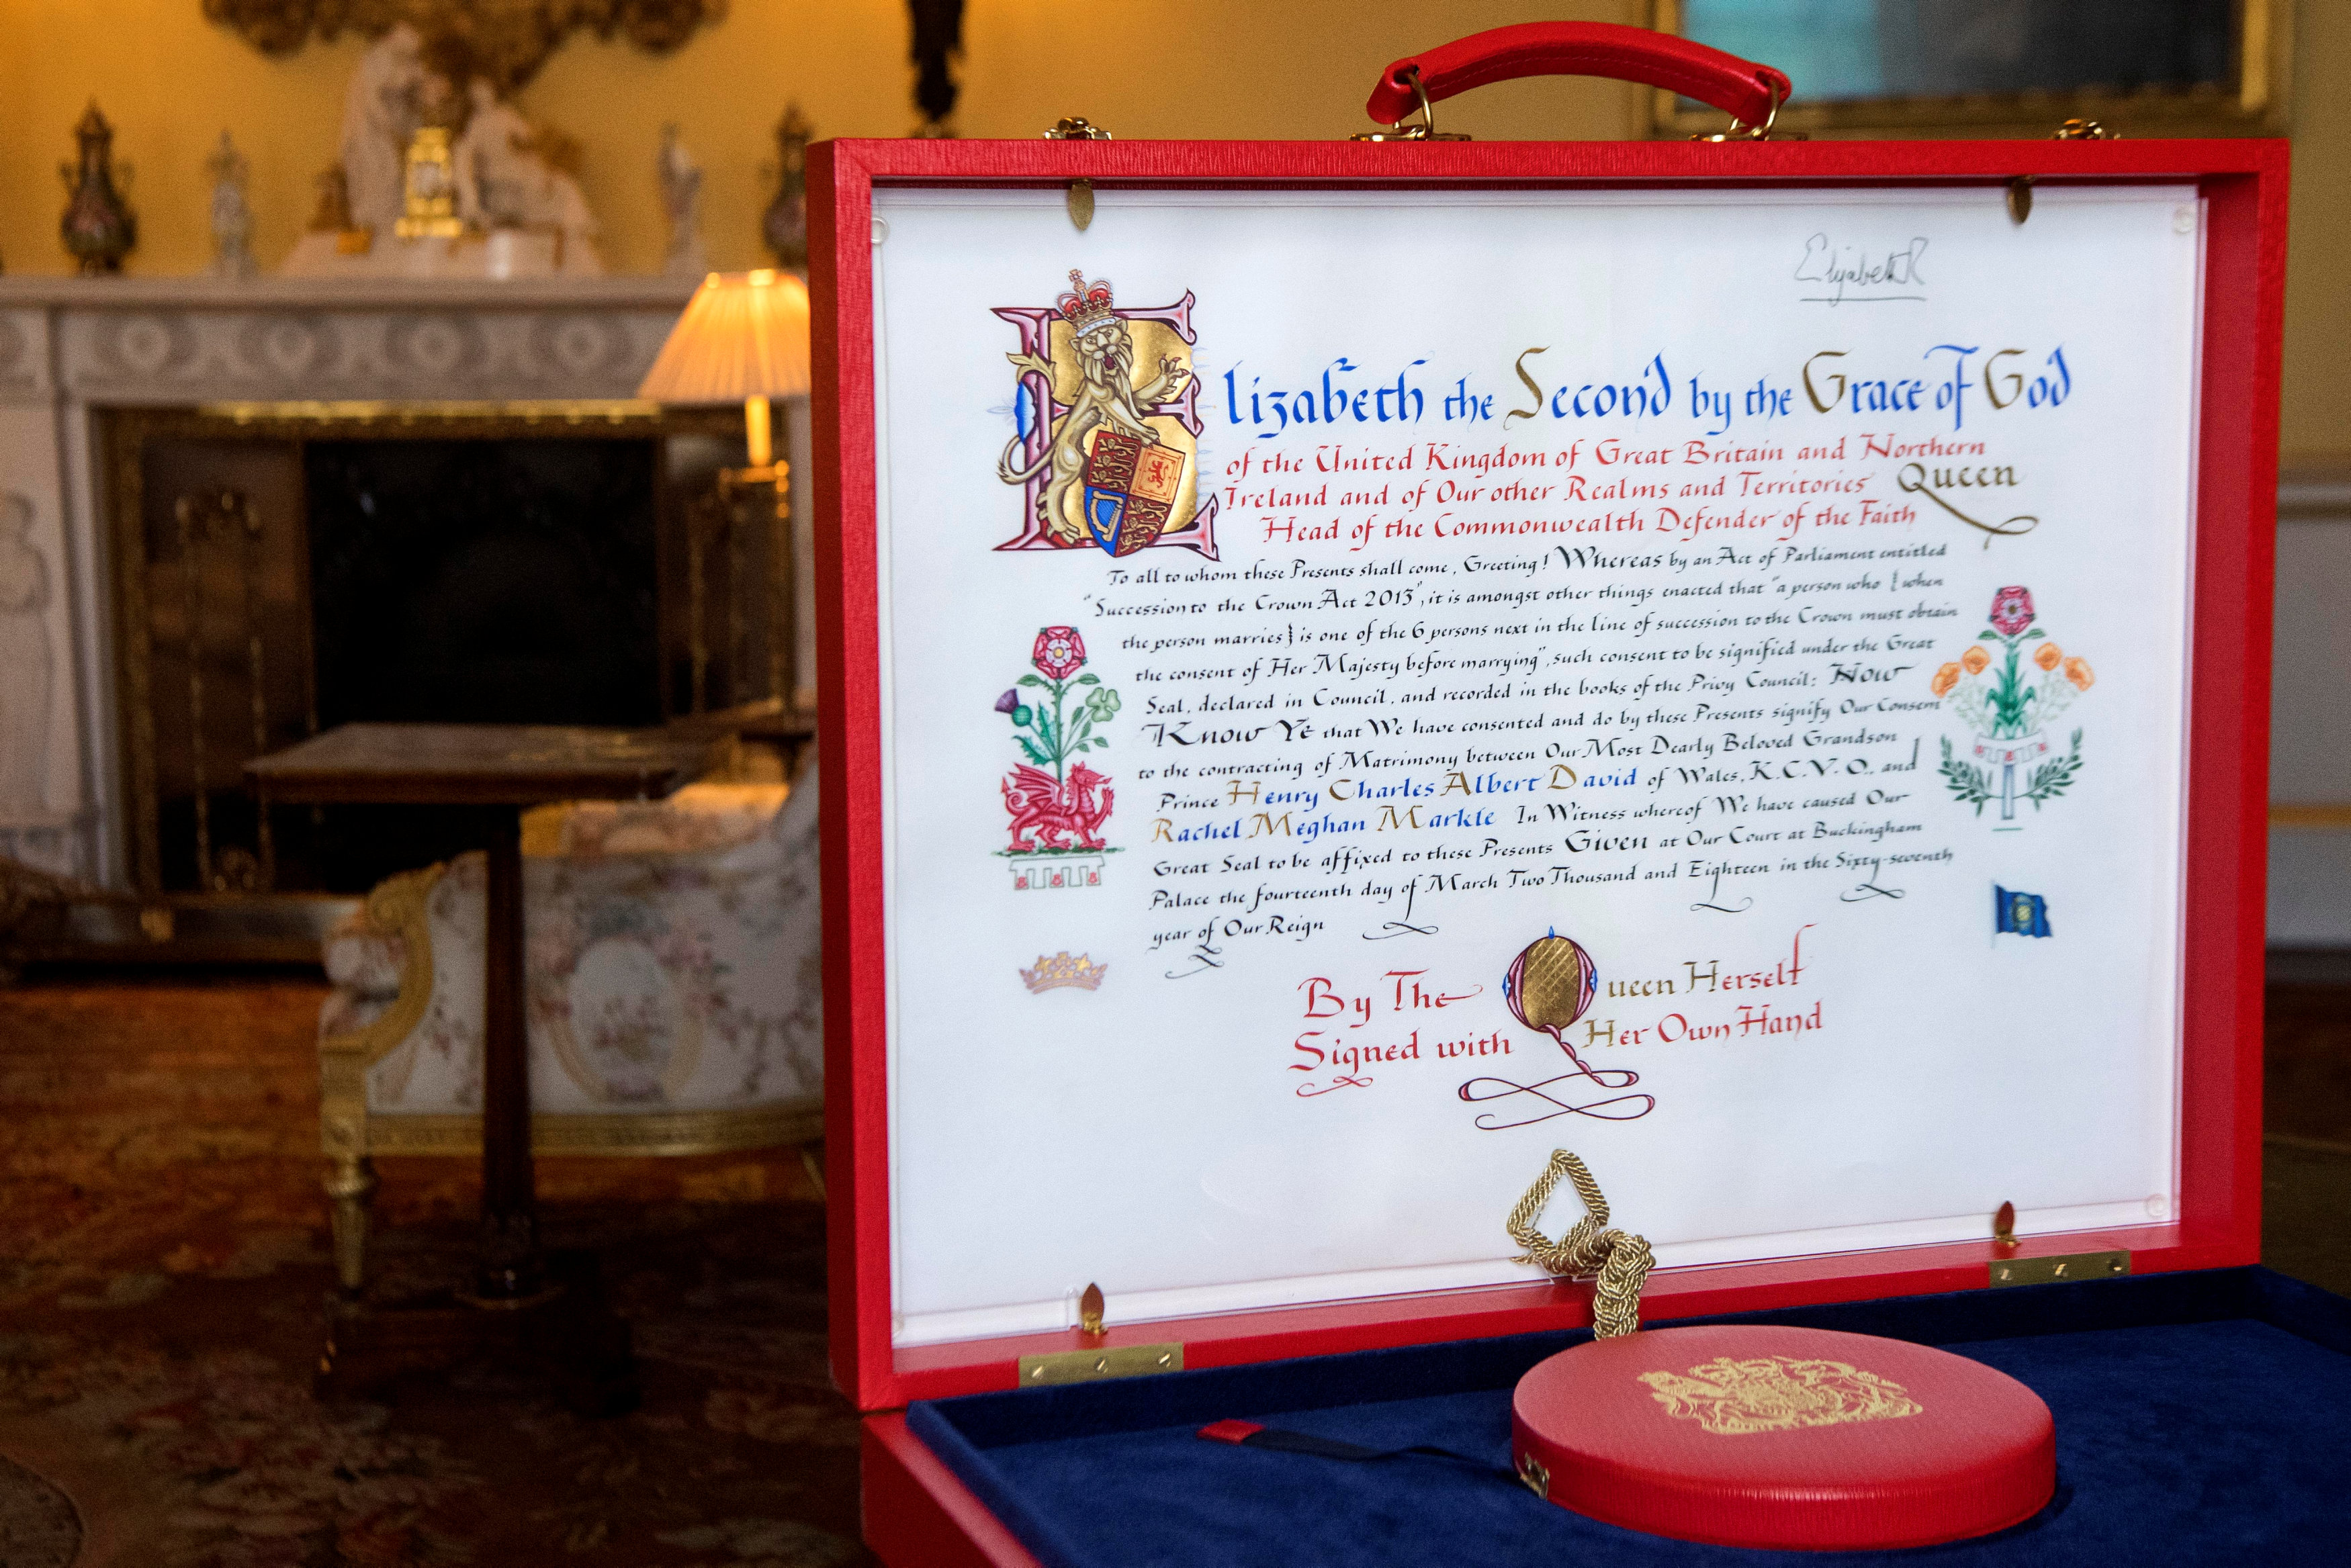 Palacio de Buckingham revela el consentimiento de la reina para la boda de Harry (Fotos)